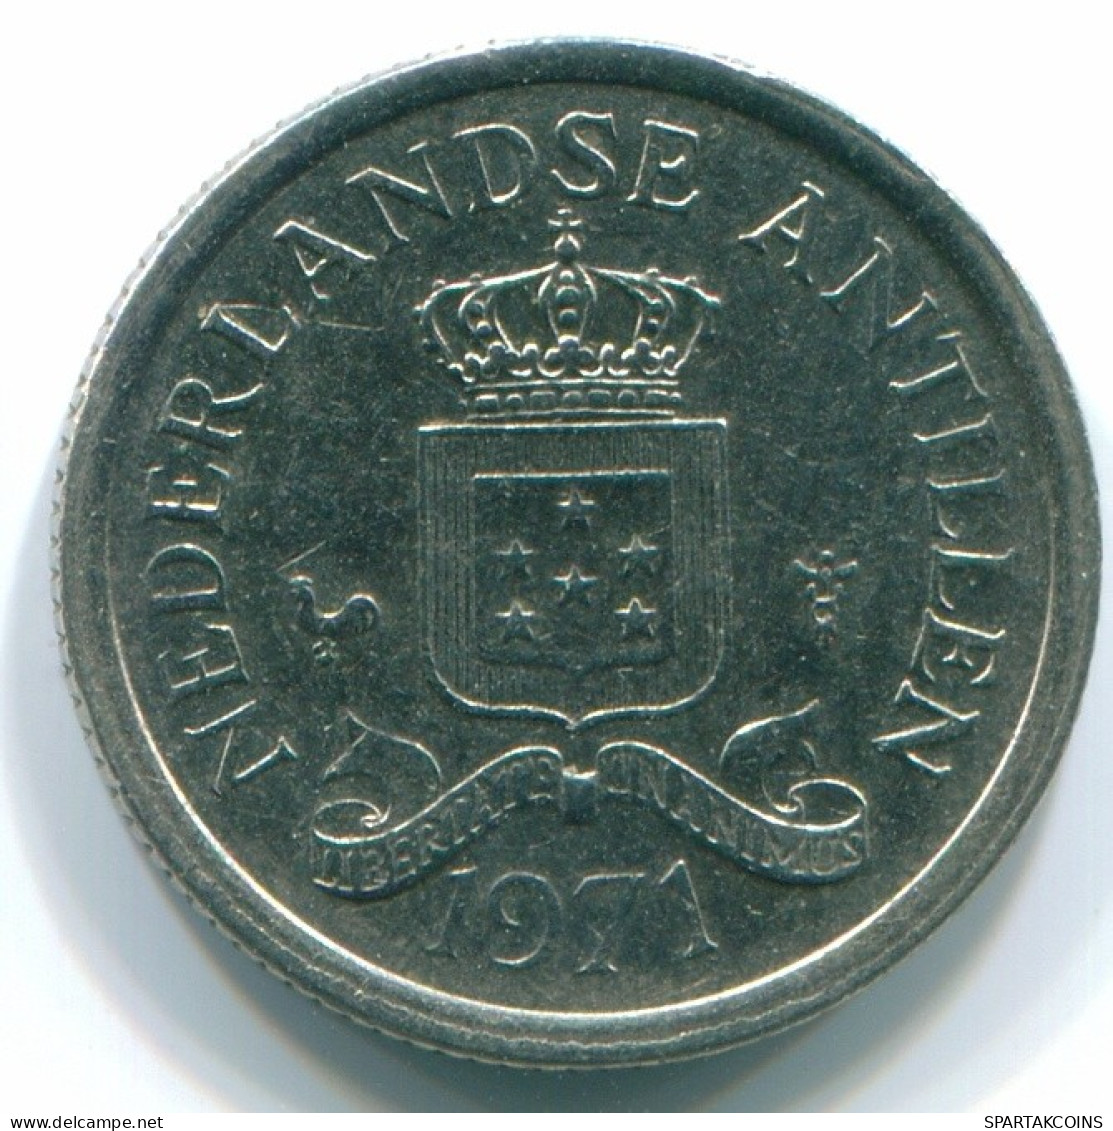 10 CENTS 1971 NIEDERLÄNDISCHE ANTILLEN Nickel Koloniale Münze #S13420.D.A - Antilles Néerlandaises